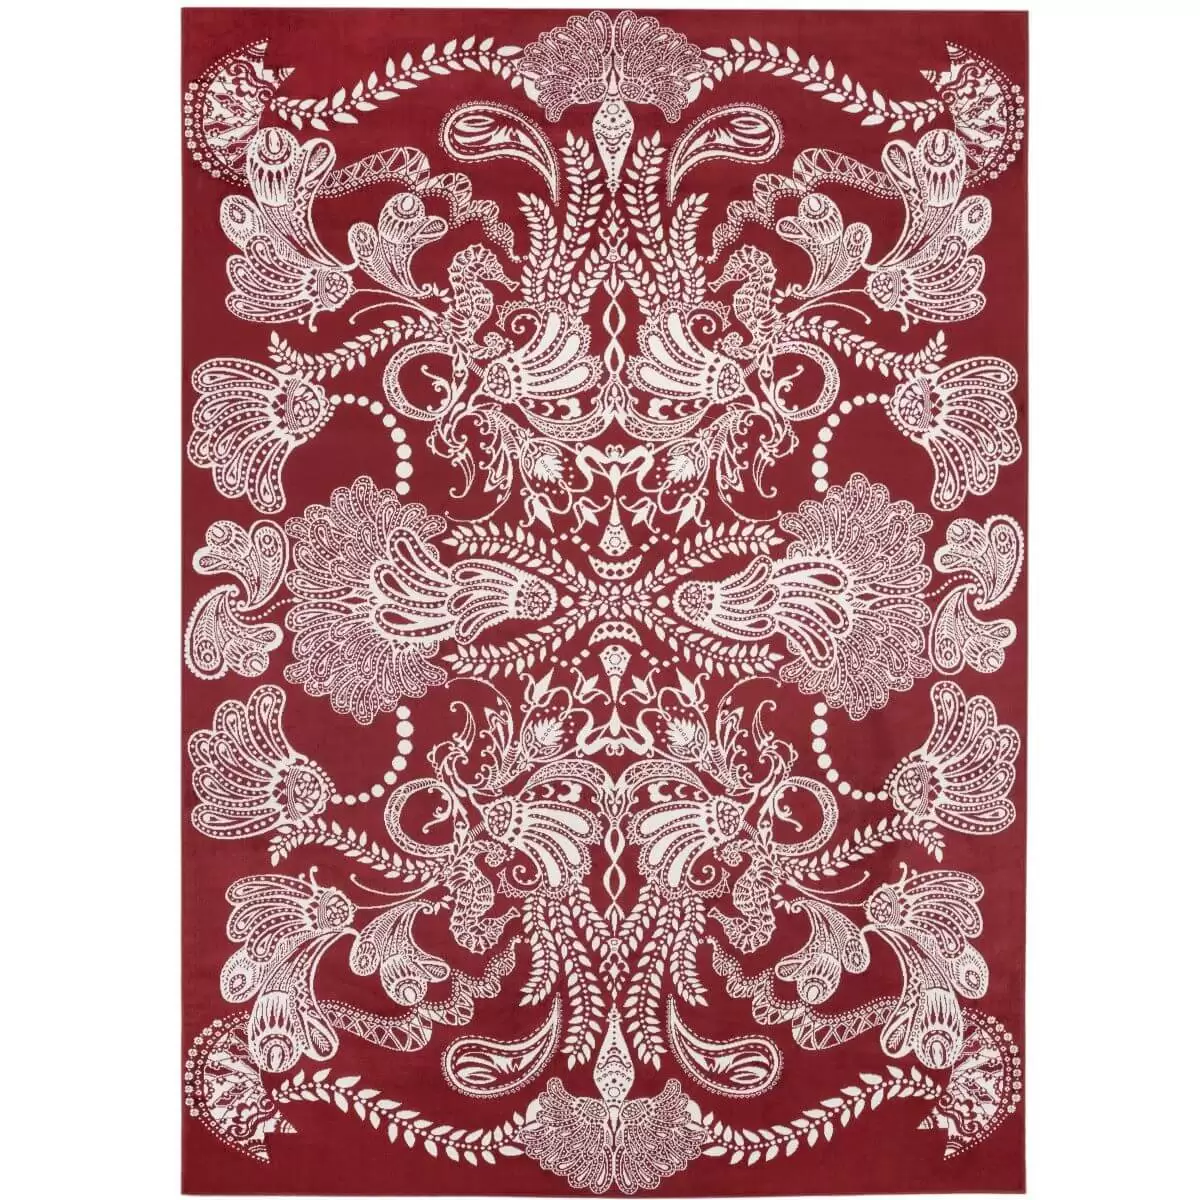 Stylowy dywan SYVÄMARI. Dekoracyjny duży dywan stylowy 140x200 do salonu o bogatej białym wzorze ornament na czerwonym tle. Skandynawskie wzornictwo